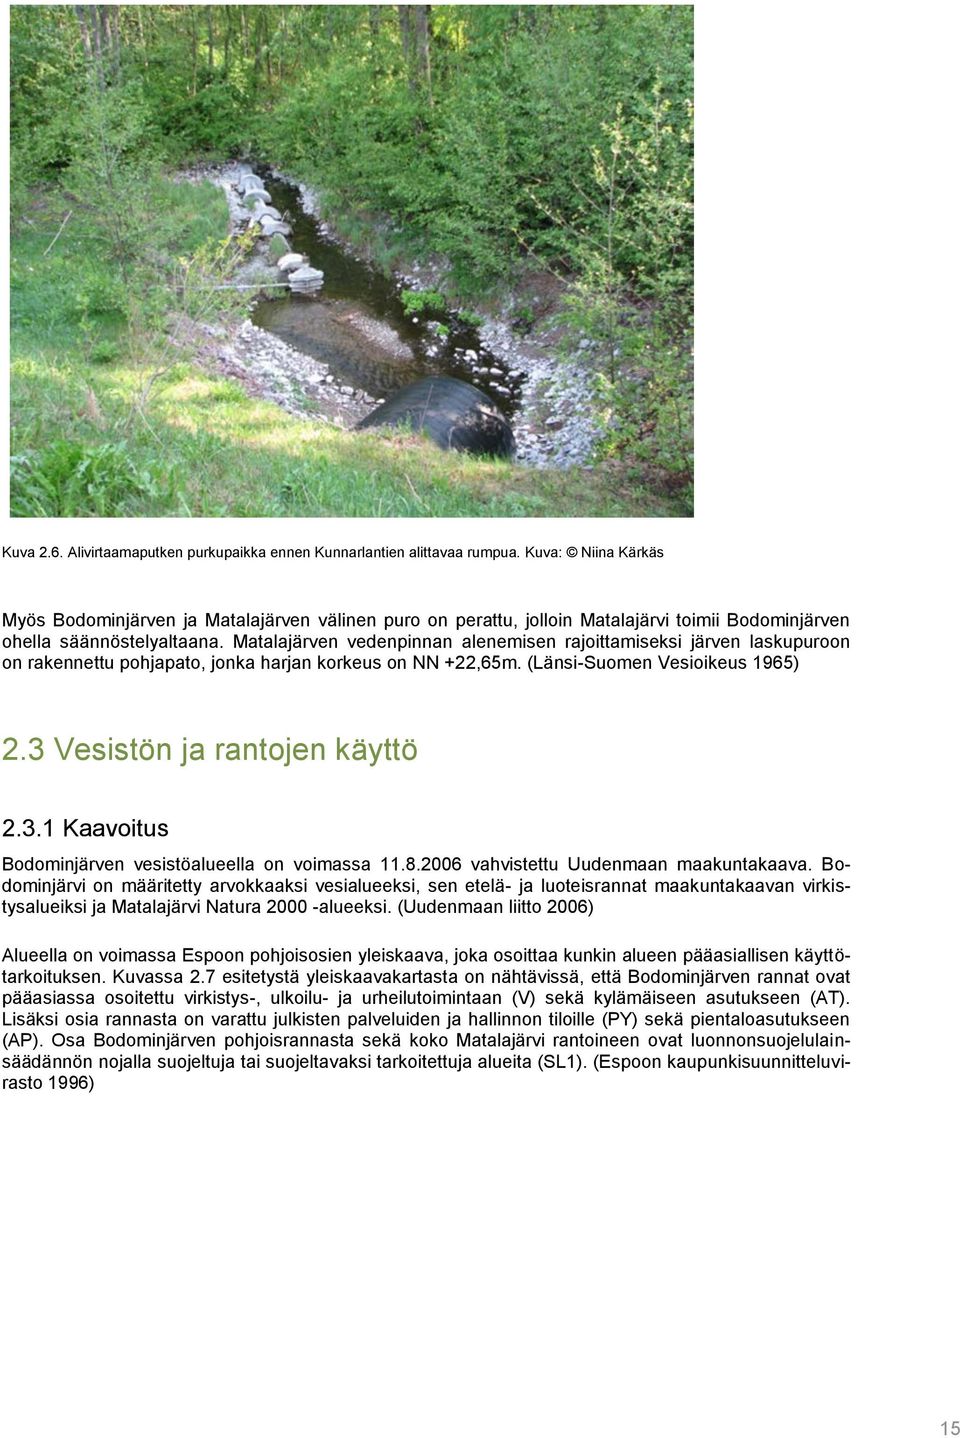 Matalajärven vedenpinnan alenemisen rajoittamiseksi järven laskupuroon on rakennettu pohjapato, jonka harjan korkeus on NN +22,65m. (Länsi-Suomen Vesioikeus 1965) 2.3 